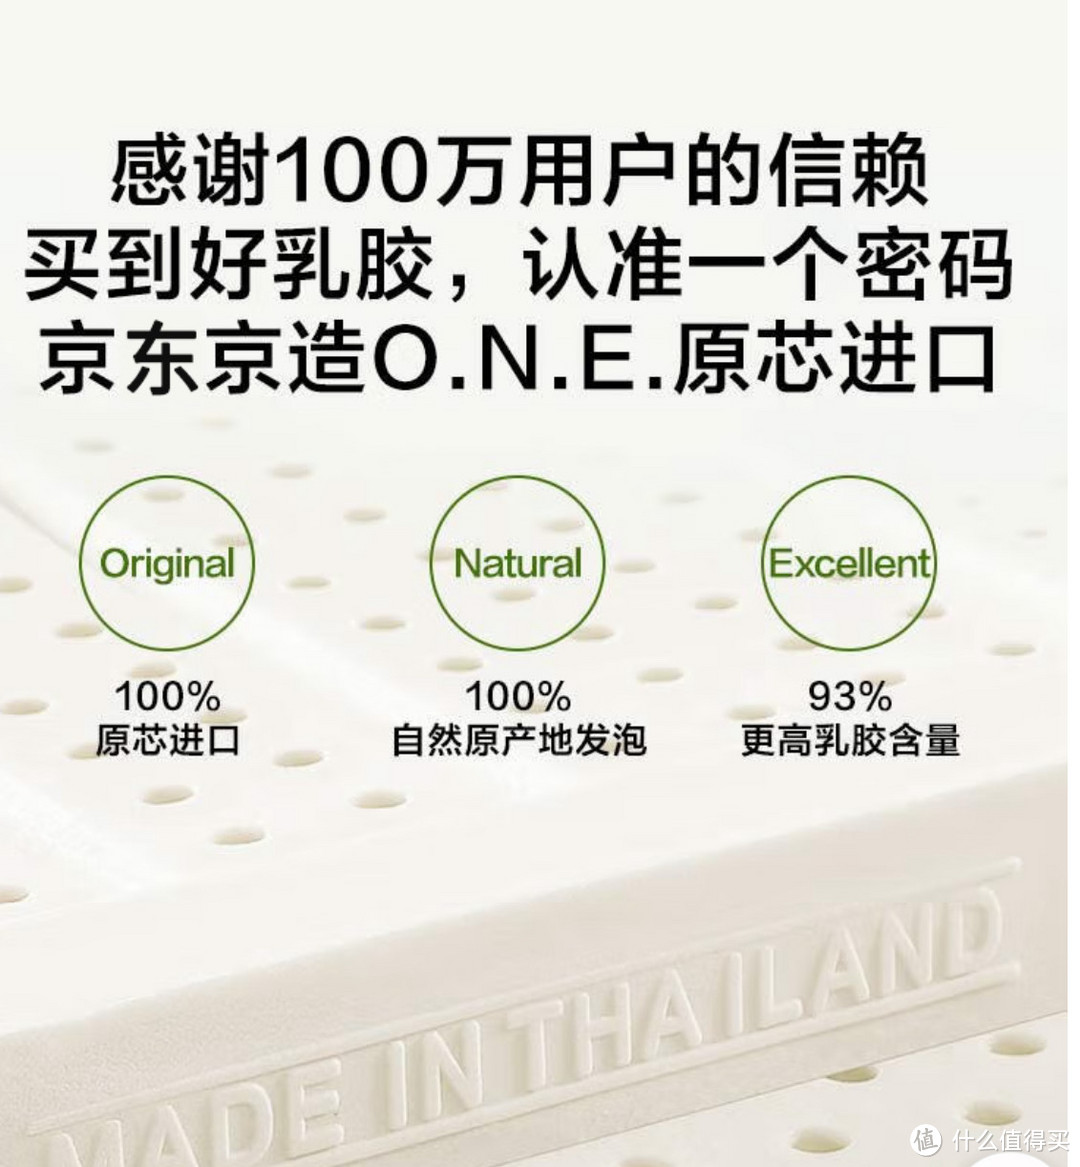 600多元钱就可以买到让睡眠质量提高的京东精造深呼吸乳胶床垫。